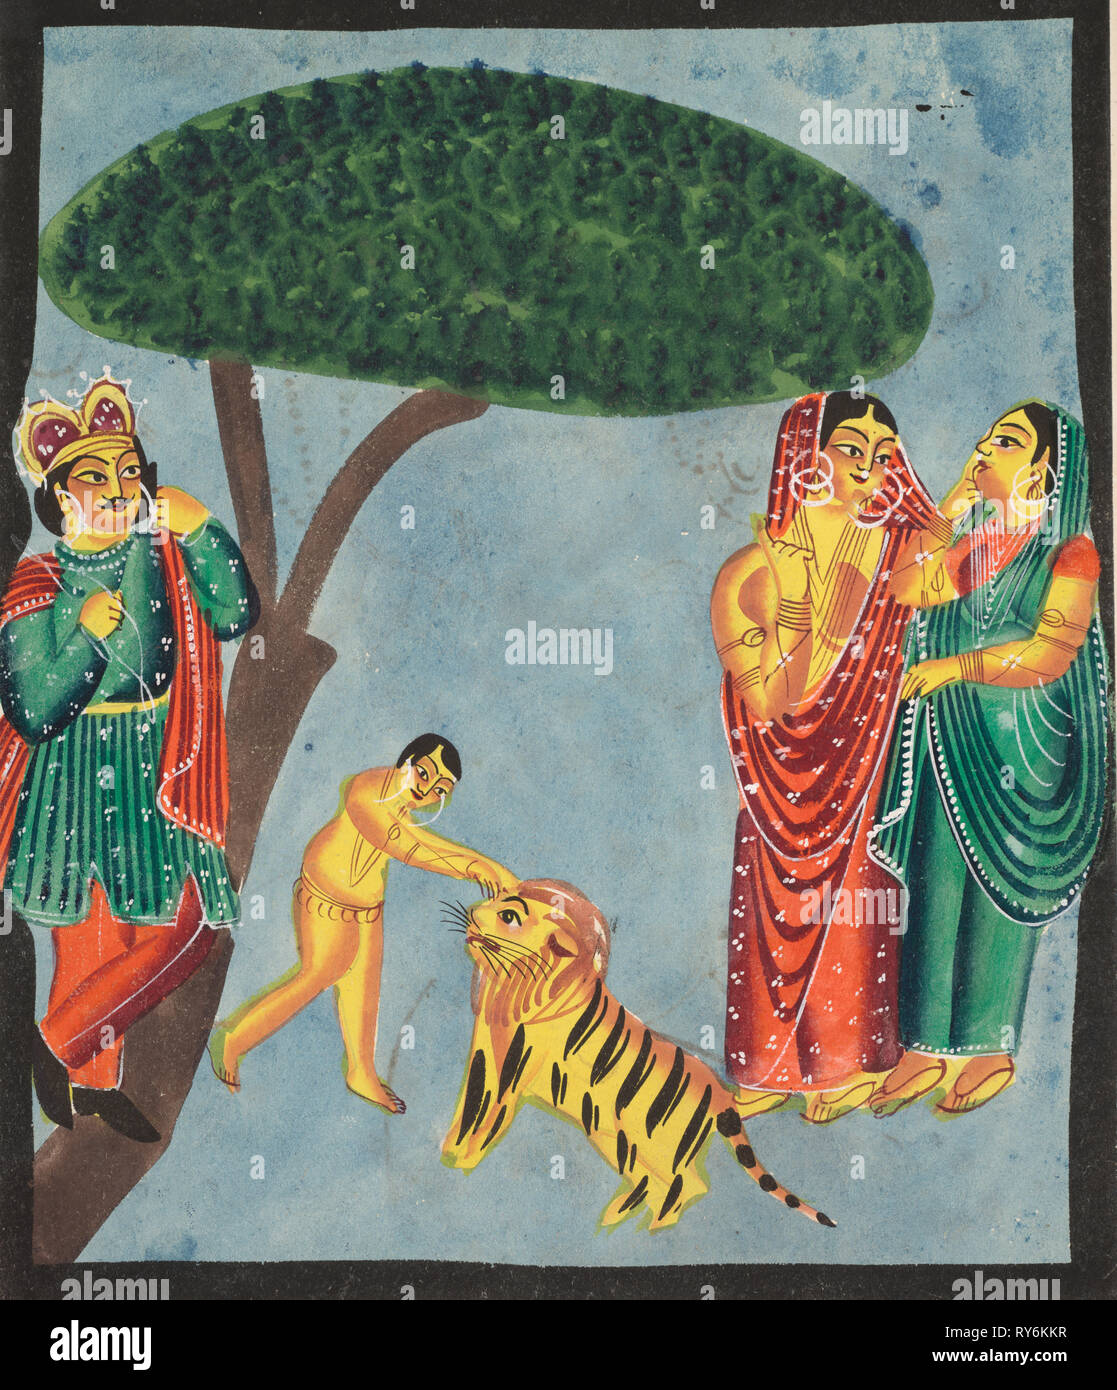 (Jatayu Rama der mythische Vogel) behindert die Ravana Wagen, versuchen zu verhindern, dass Entführung von Sita, 1800. Indien, Kalkutta, Kalighat Malerei, 19. Schwarze Tinte, Farbe und Lack, Silber und Graphit auf Papier; underdrawing sekundären Support: 47,8 x 29,4 cm (18 13/16 x 11 9/16 in.); nur die Malerei: 45,5 x 28,2 cm (17 15/16 x 11 1/8 in. Stockfoto